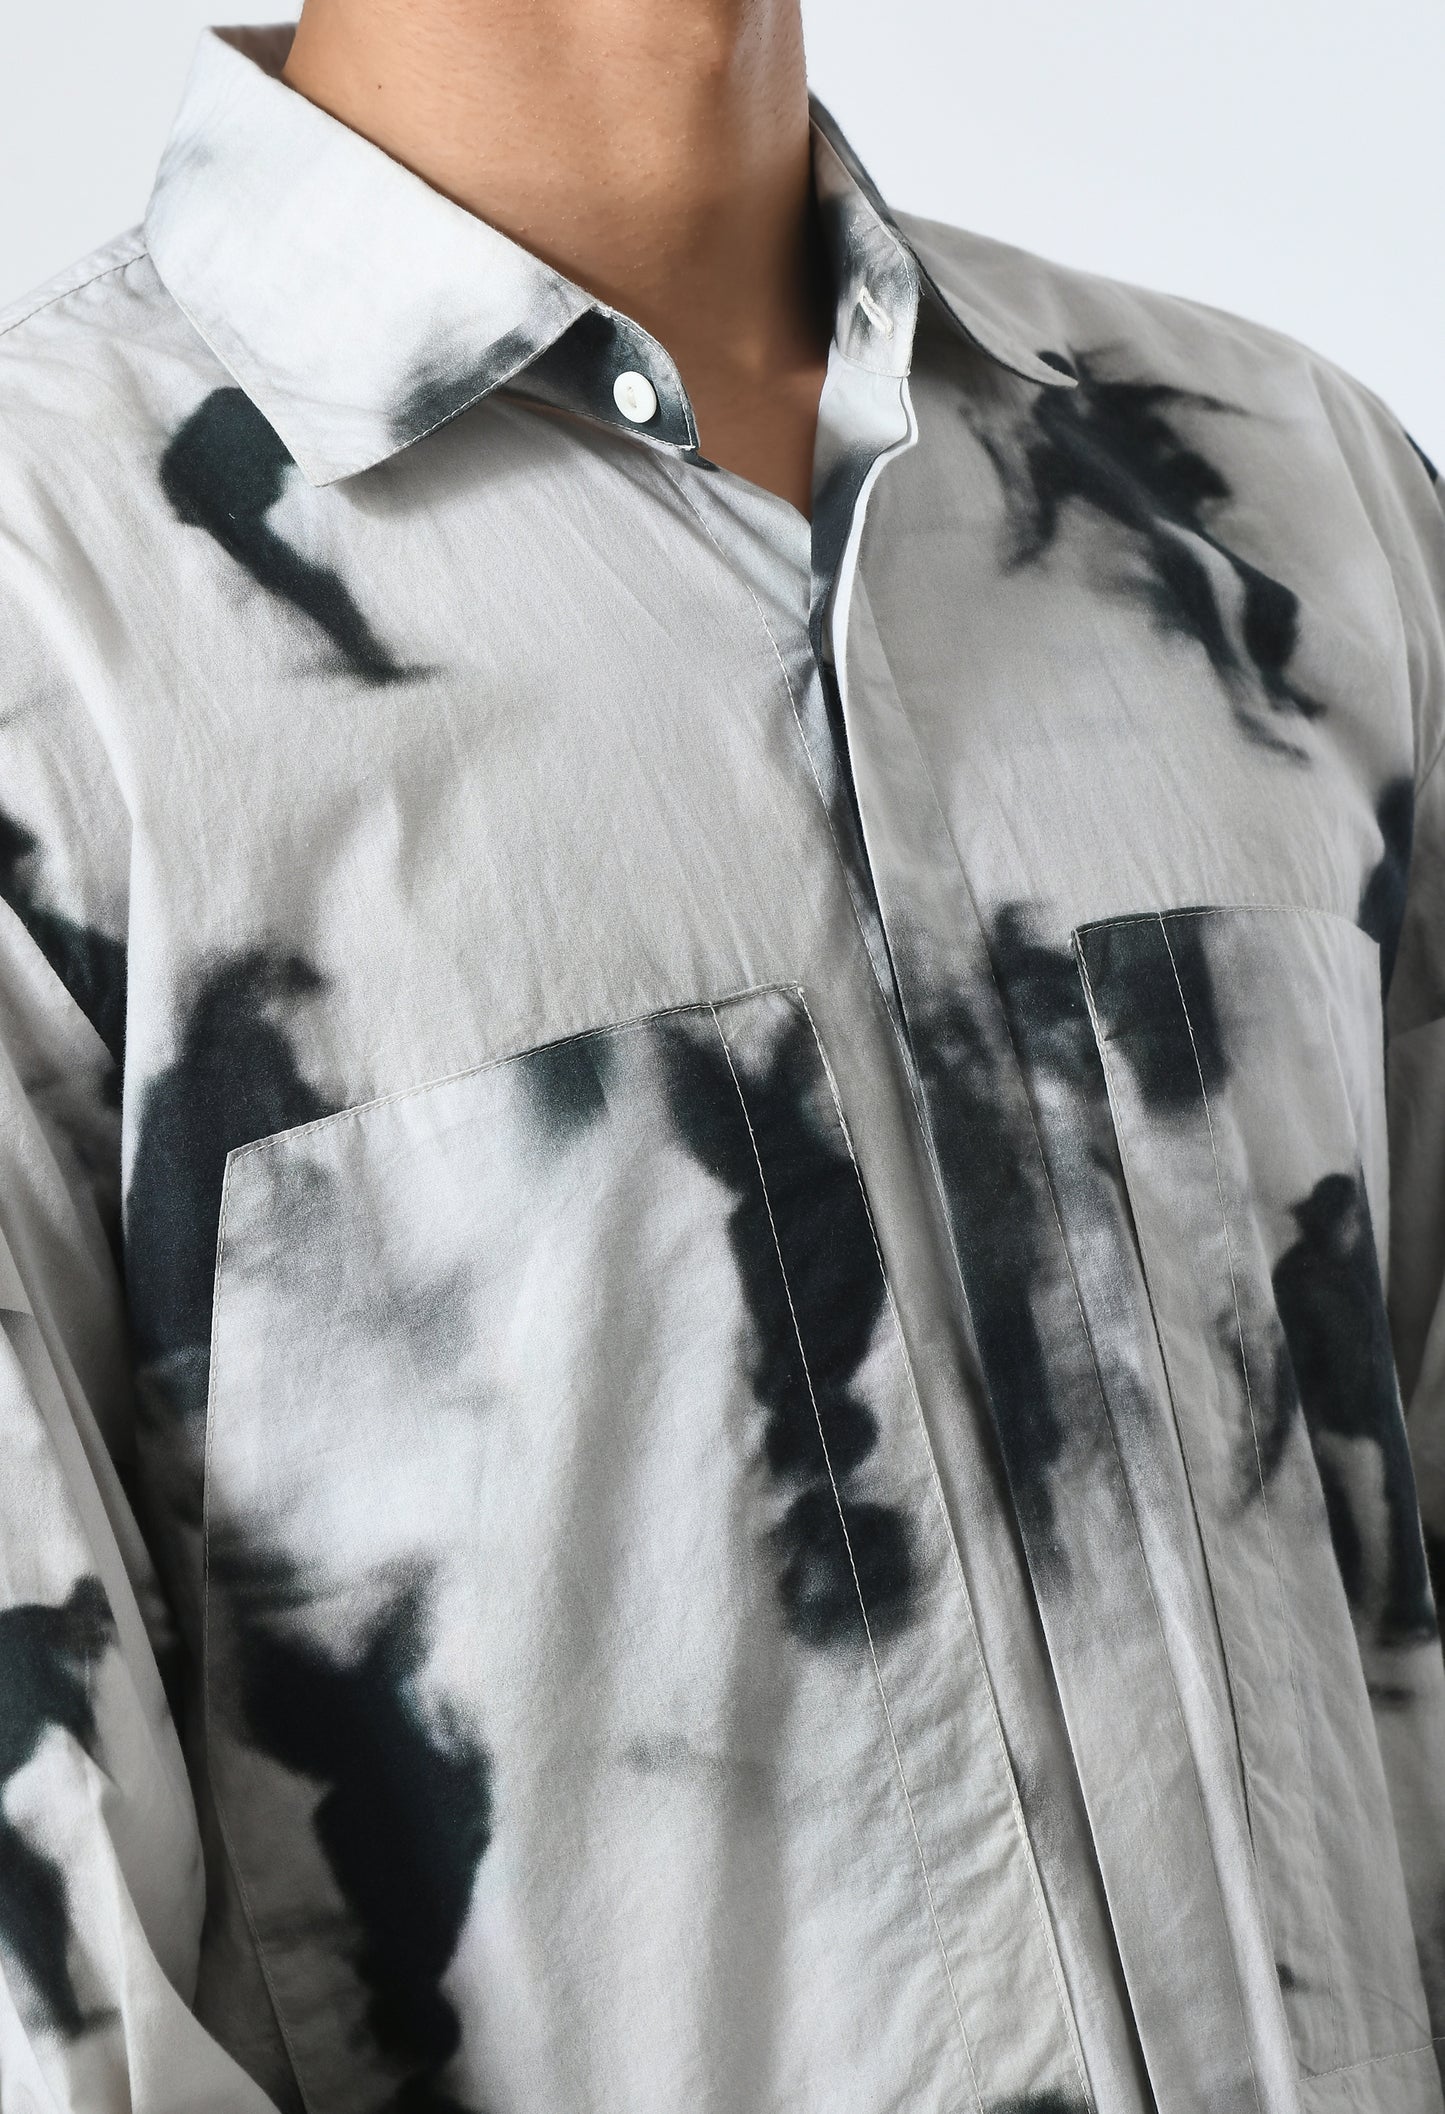 Unisex regular-fit shirt featuring tie-dye effect.